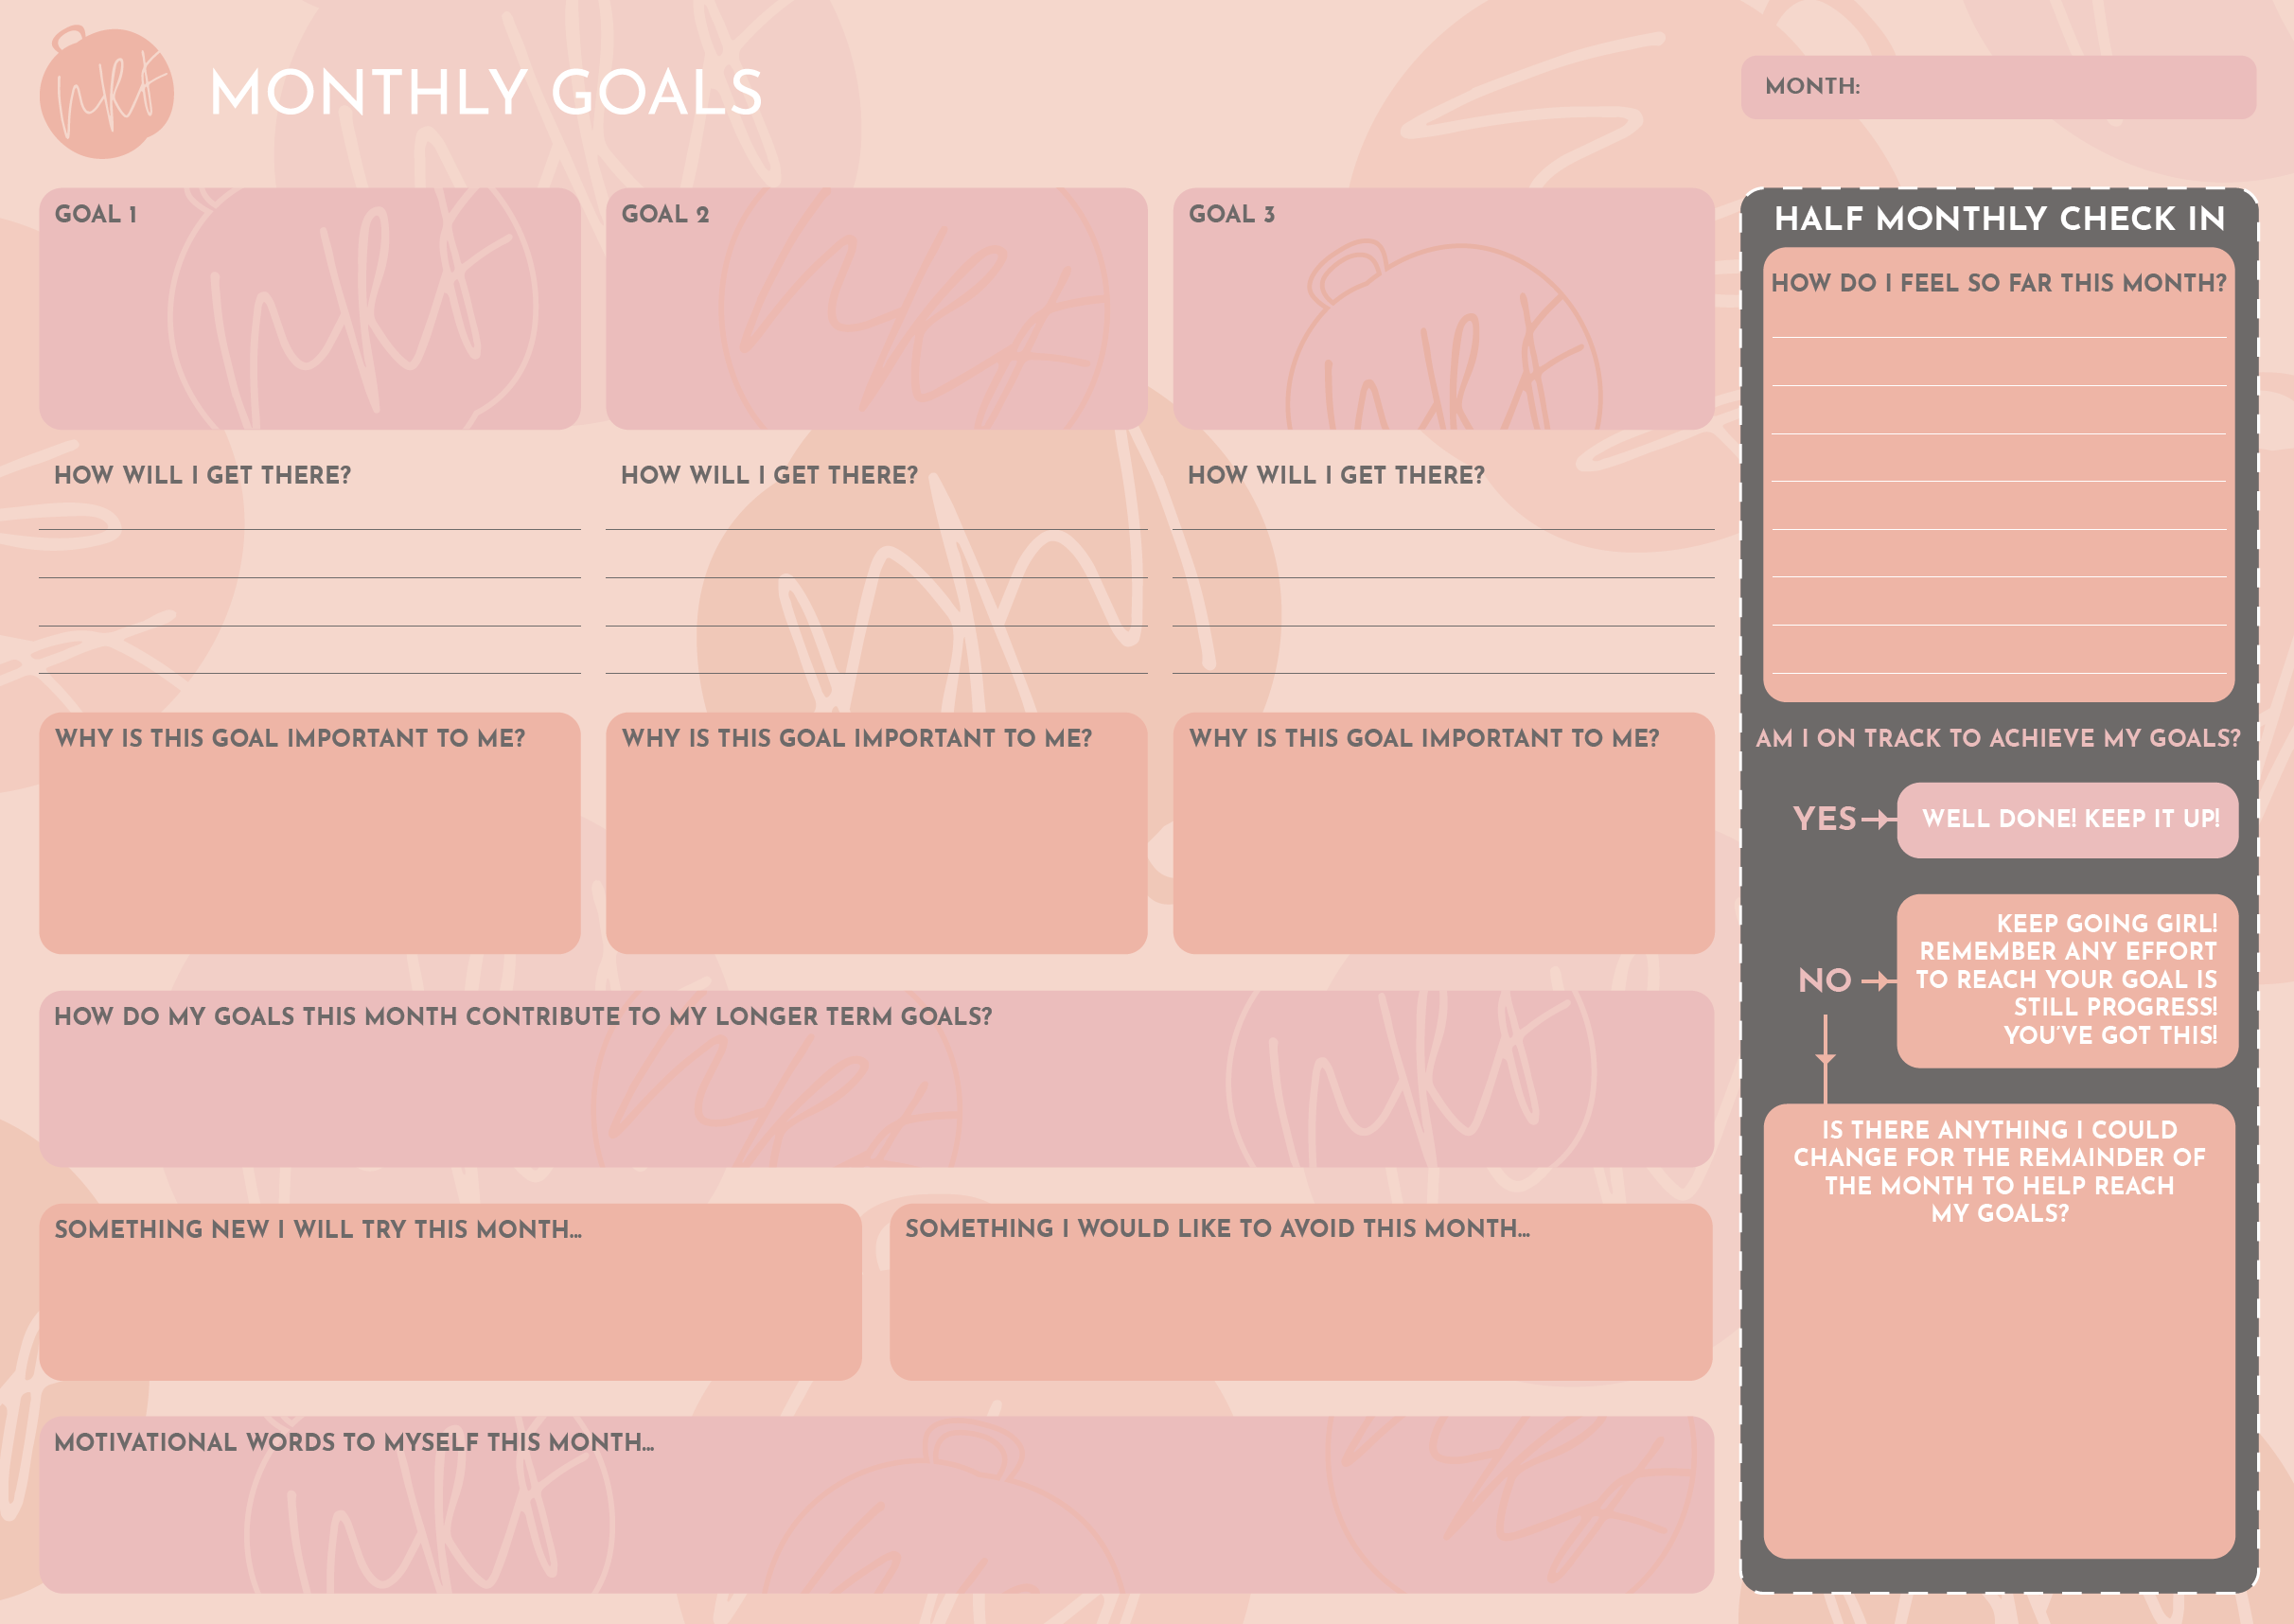 Monthly Goals